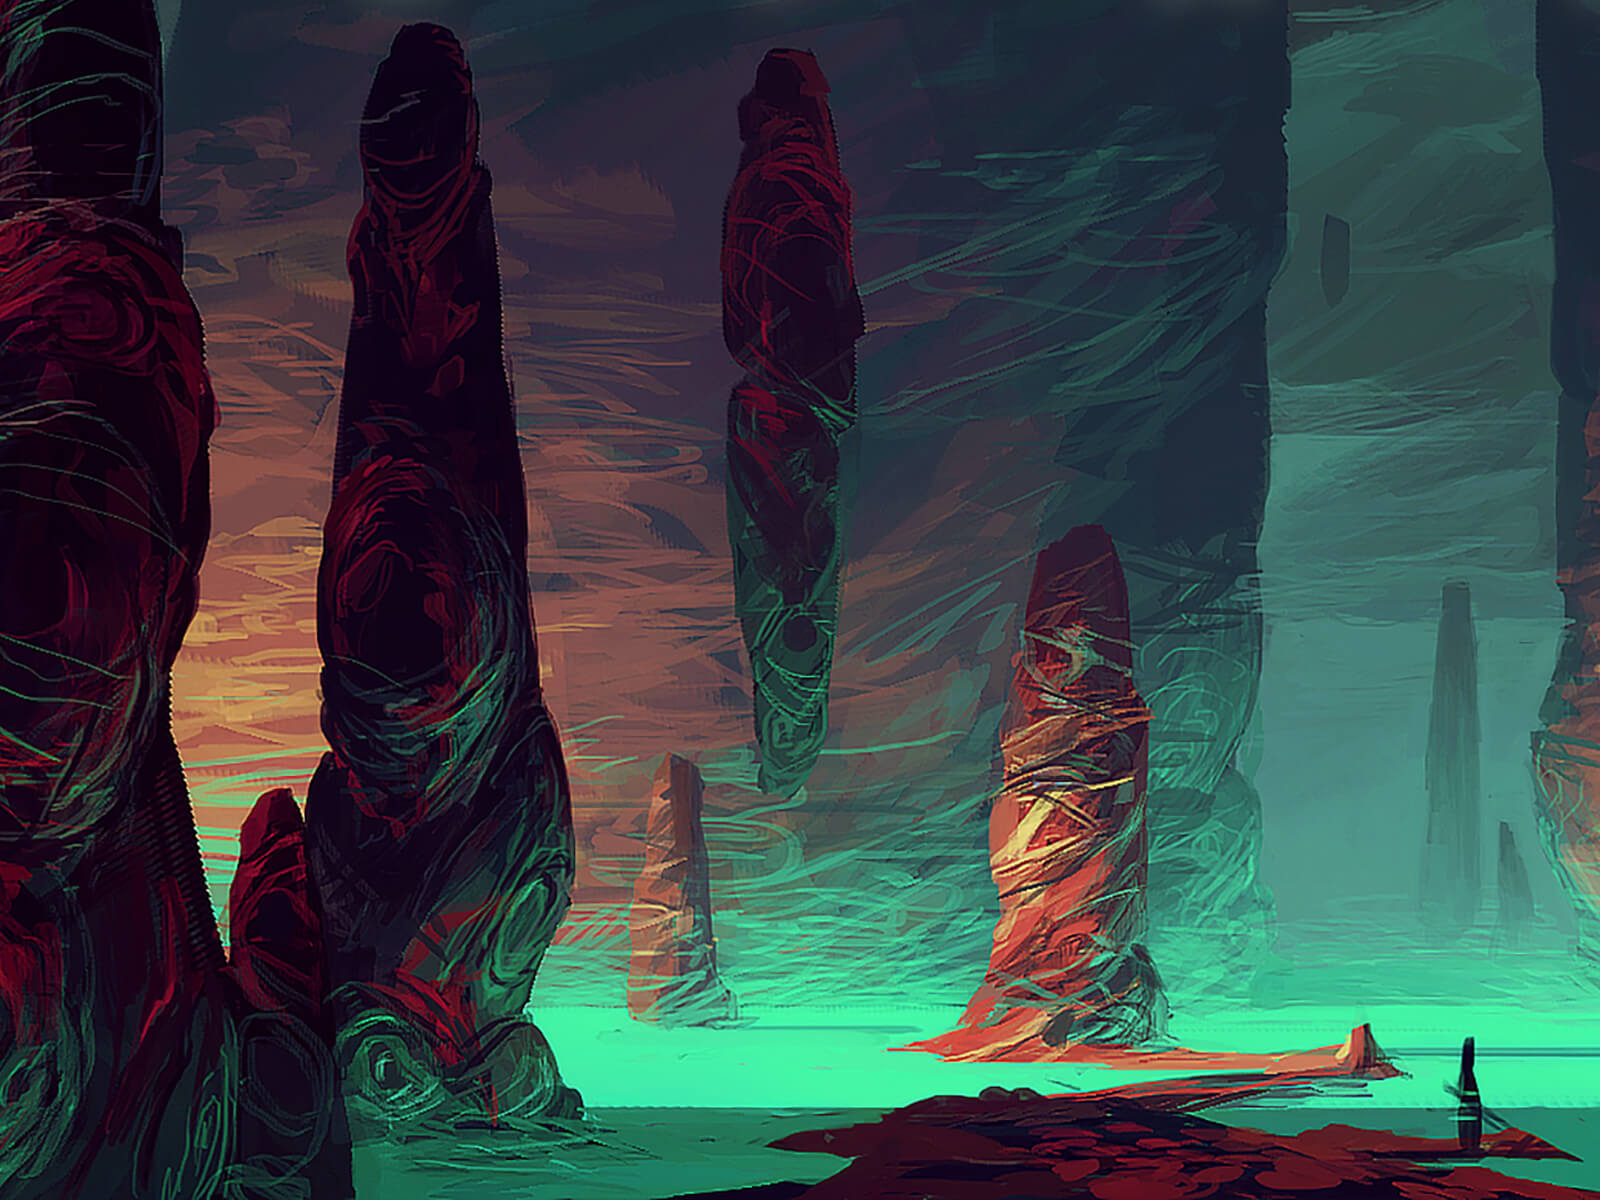 Un oscuro entorno alienígena con coloridos afloramientos rocosos está iluminado desde abajo por una brillante masa de agua color aguamarina.